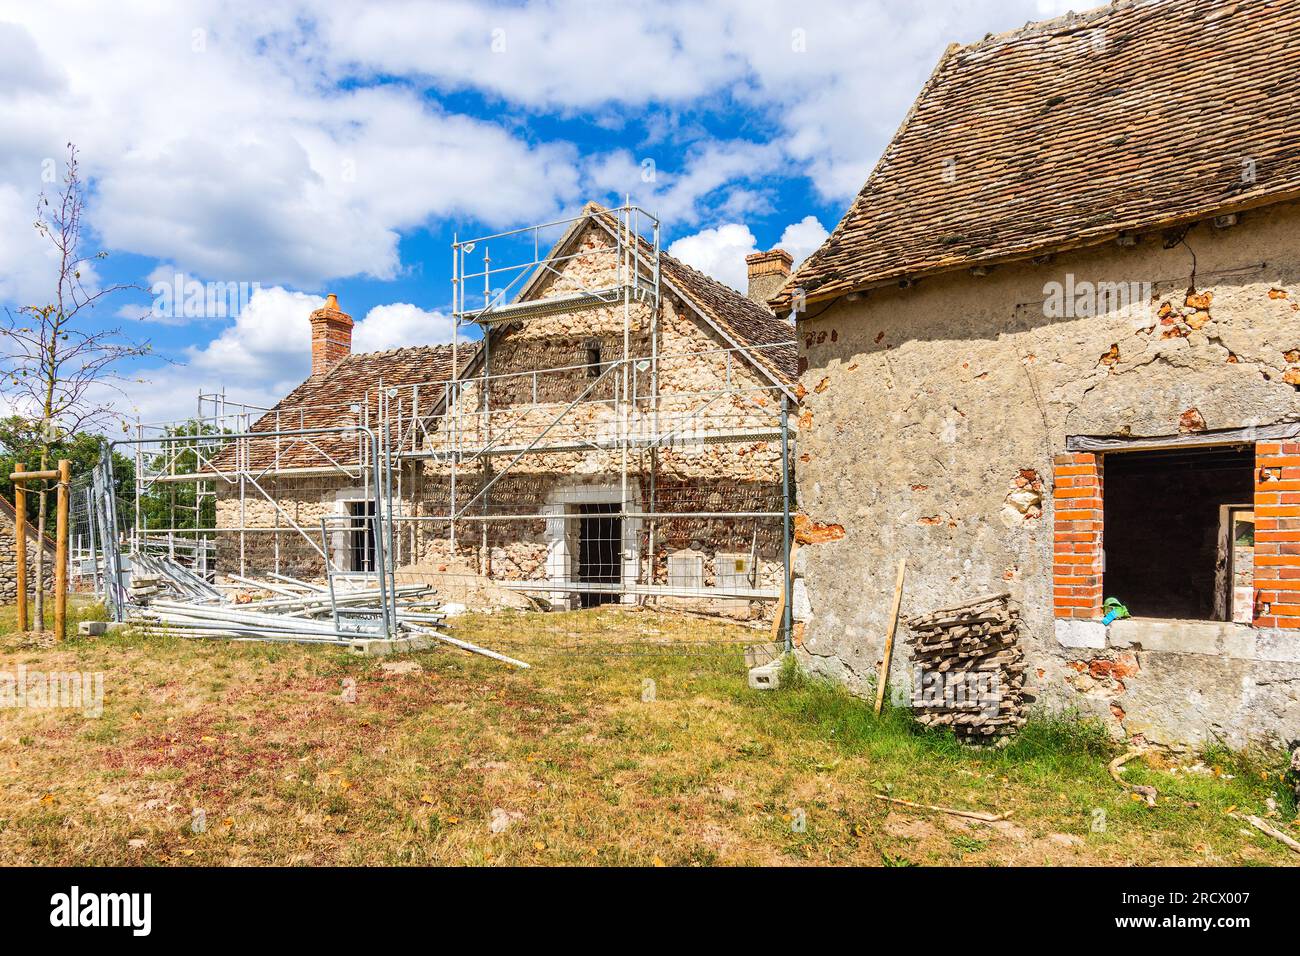 Échafaudage entourant une ancienne maison de campagne en cours de rénovation - Rosnay, Indre (36), France. Banque D'Images